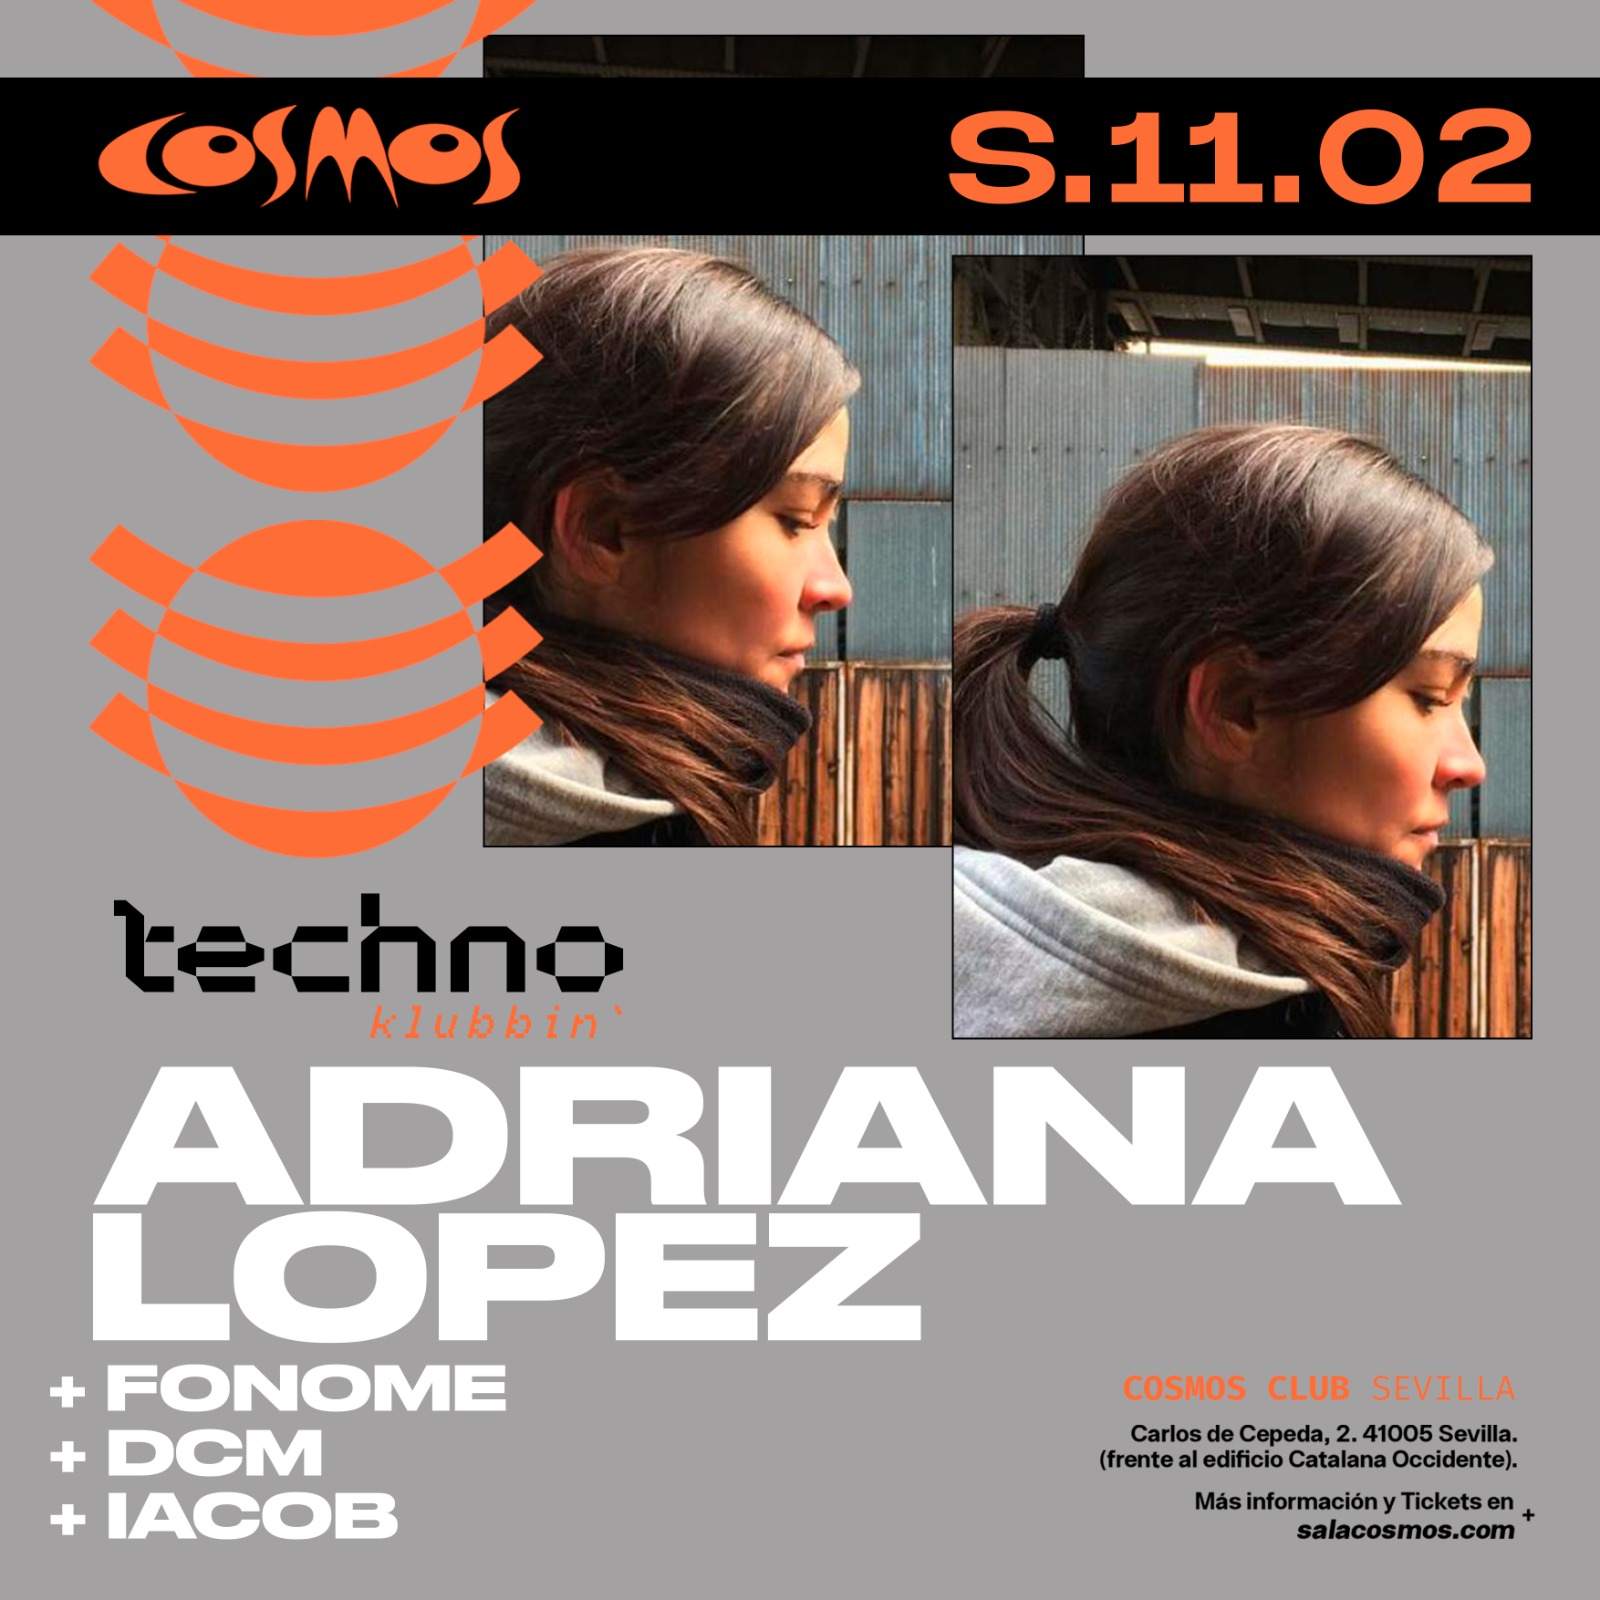 Techno Klubbin' w/ Adriana Lopez - フライヤー表